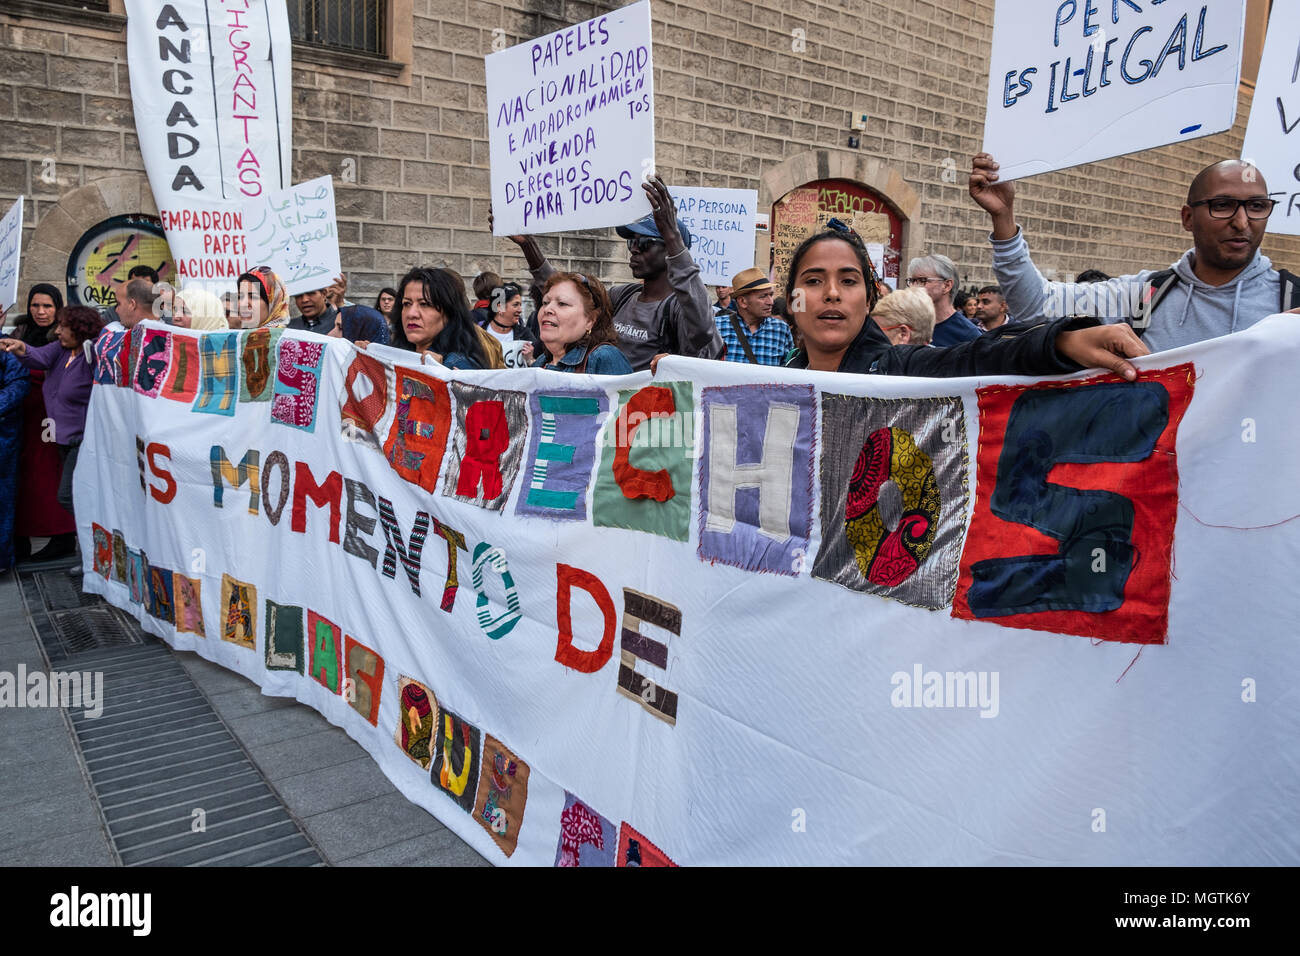 Barcelona, España. 28 abr, 2018. Una gran pancarta hecha a mano con trozos ropa con el texto "Exigimos derechos, es tiempo para cuidar a quienes cuidan'. Durante los últimos siete